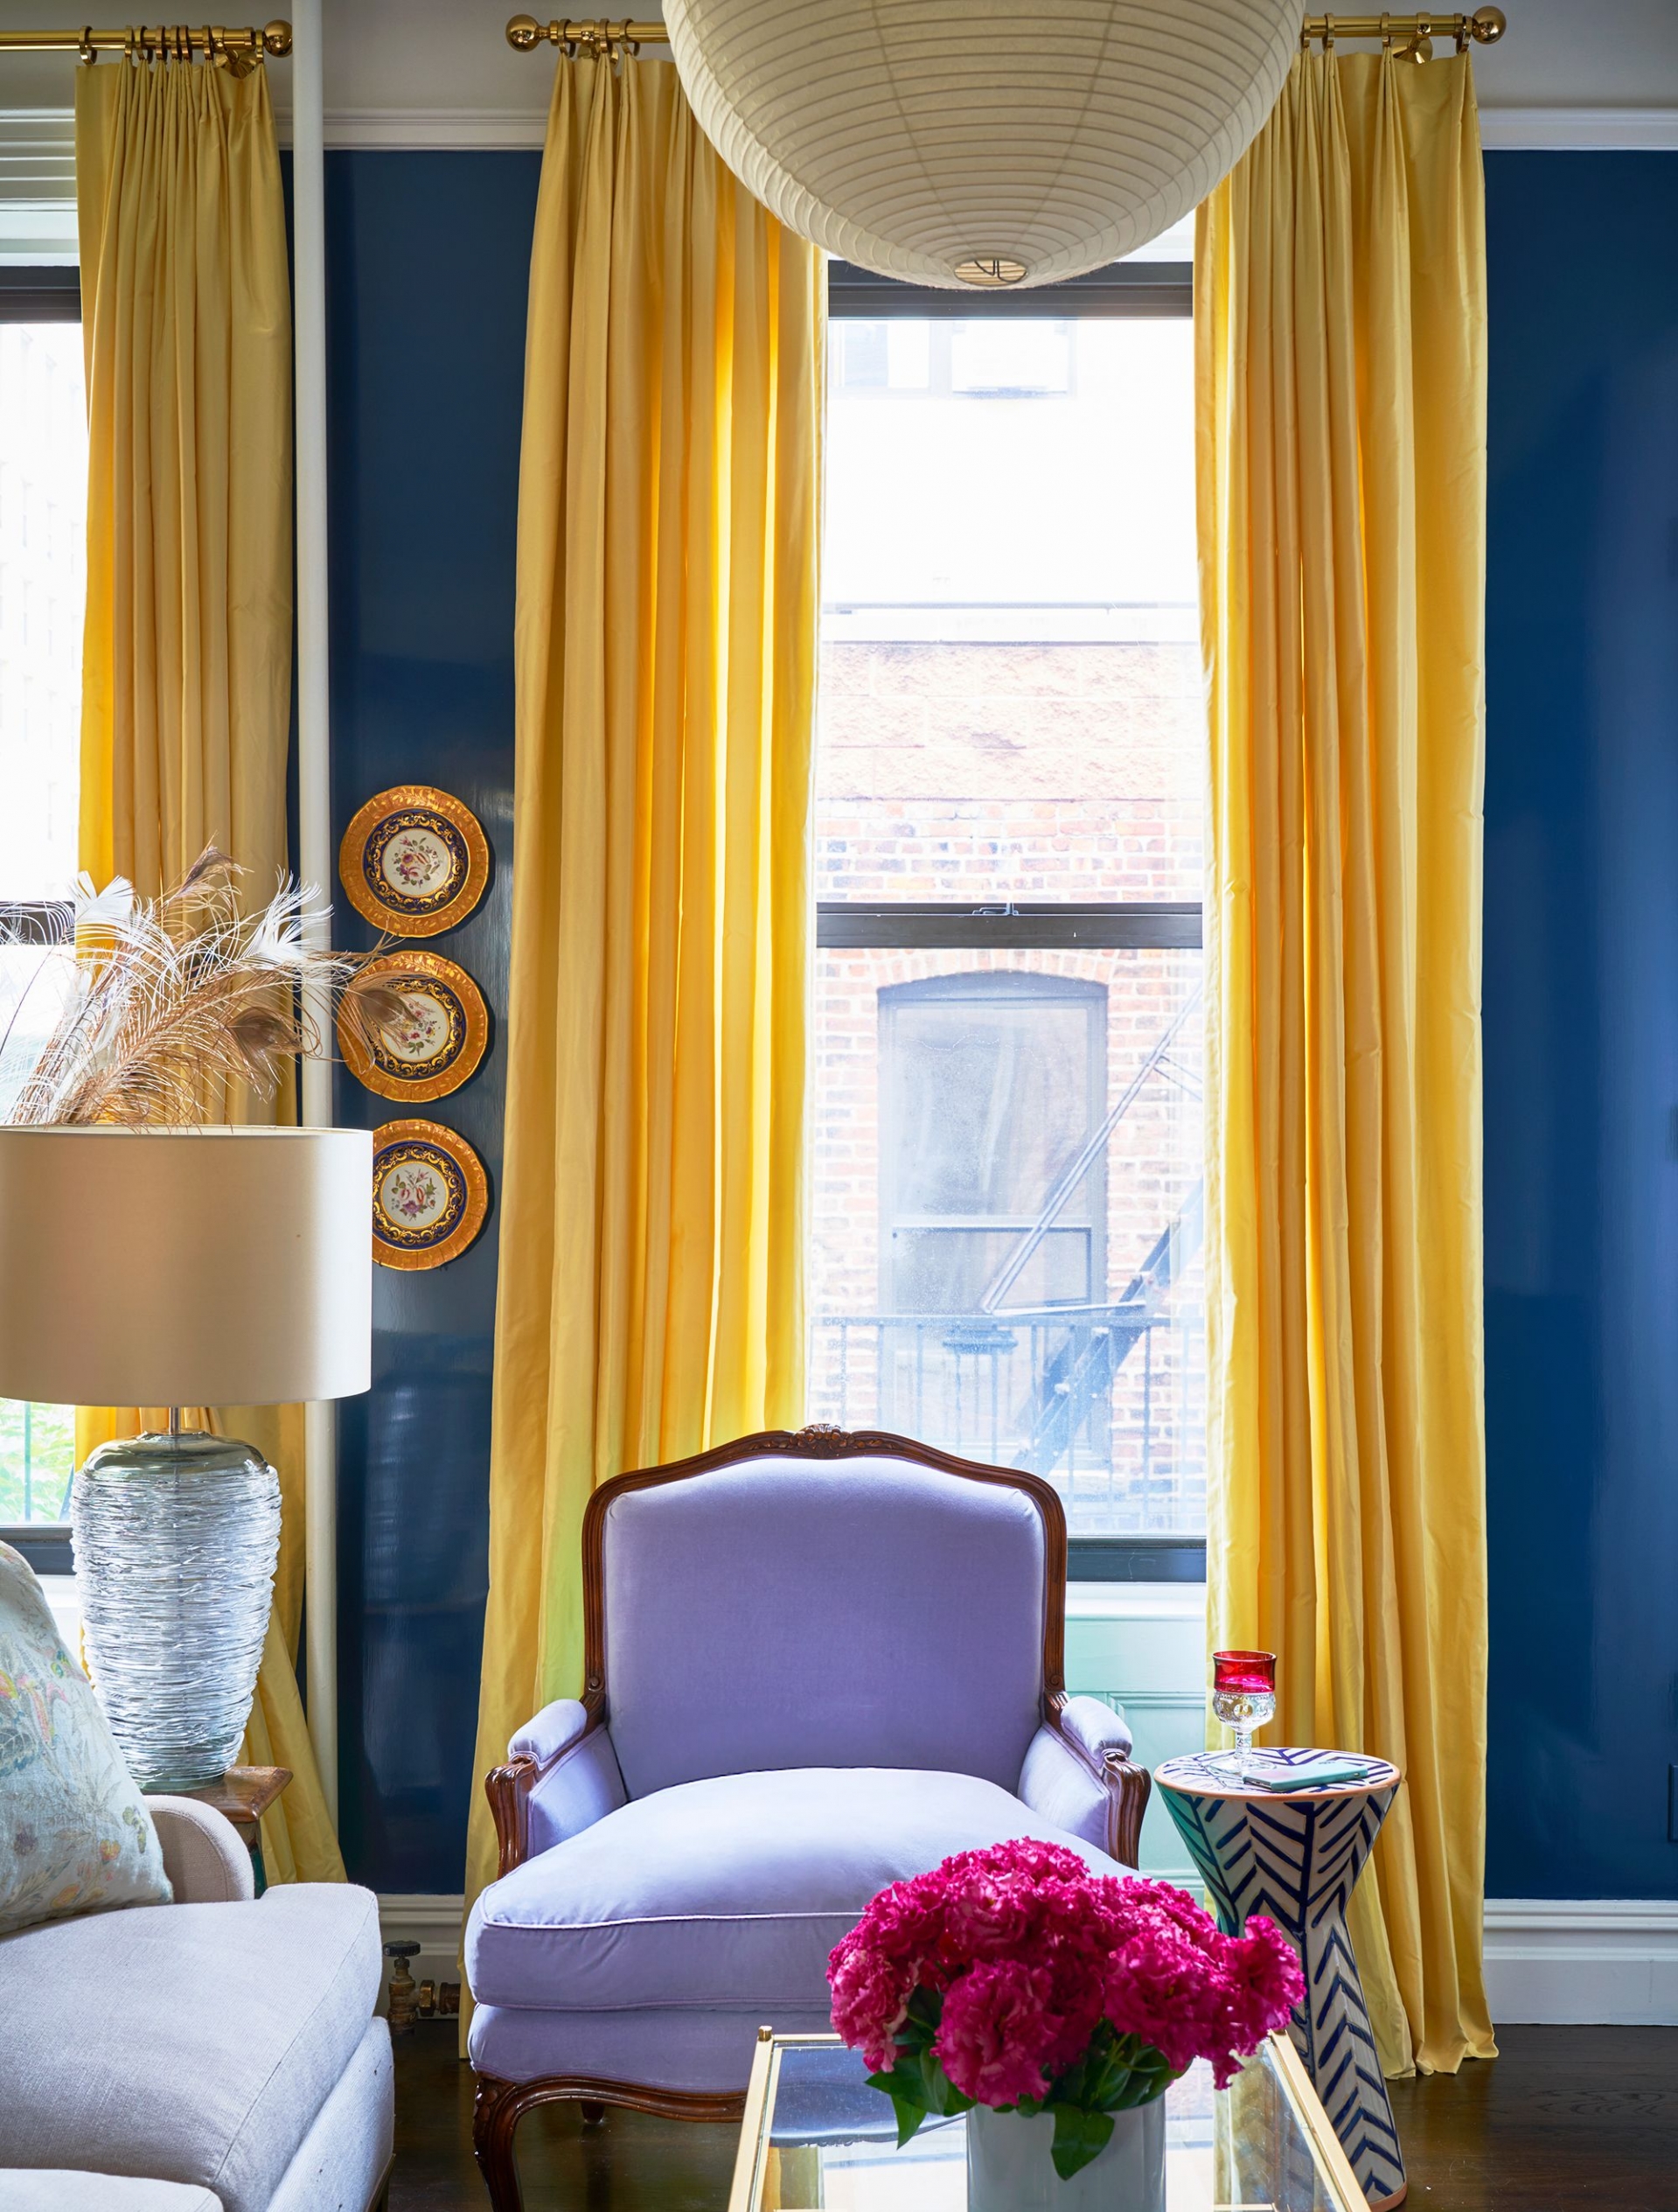 Thay vì sử dụng màu vàng để sơn tường hay làm vải bọc sofa, ghế bành, bạn có thể chọn giải pháp thiết lập rèm che như phòng khách này. Chiếc rèm có chiều cao kịch trần, độ dài chấm sàn nhà tạo cảm giác căn phòng “cao lên” và tươi sáng hơn hẳn.